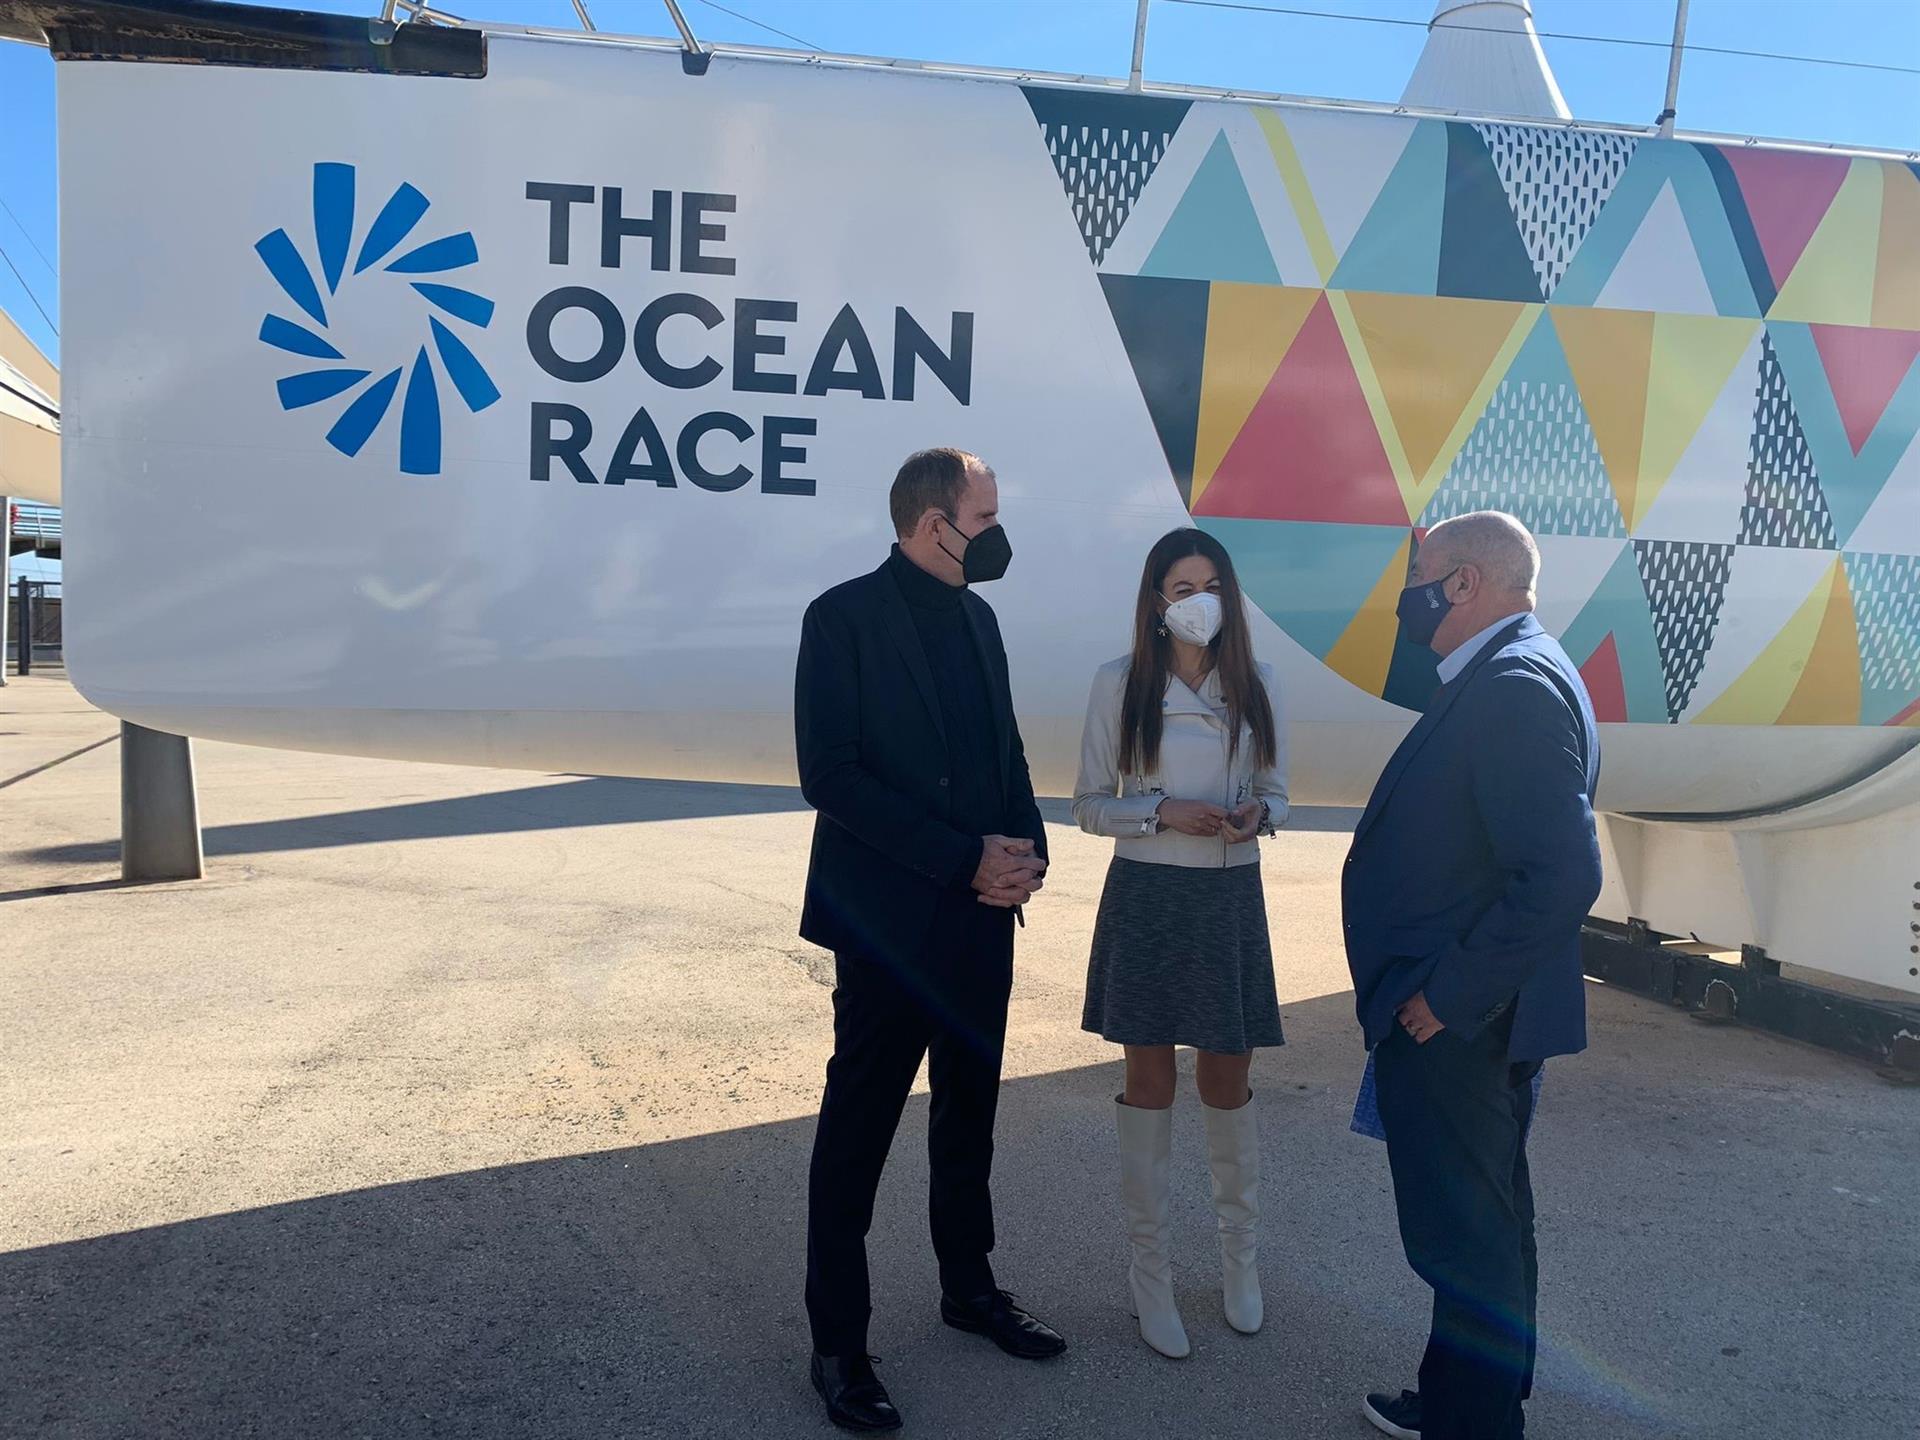 La salida de la Vuelta al Mundo a Vela en Alicante estrenará un espacio ‘Race Village’ innovador y tecnológico